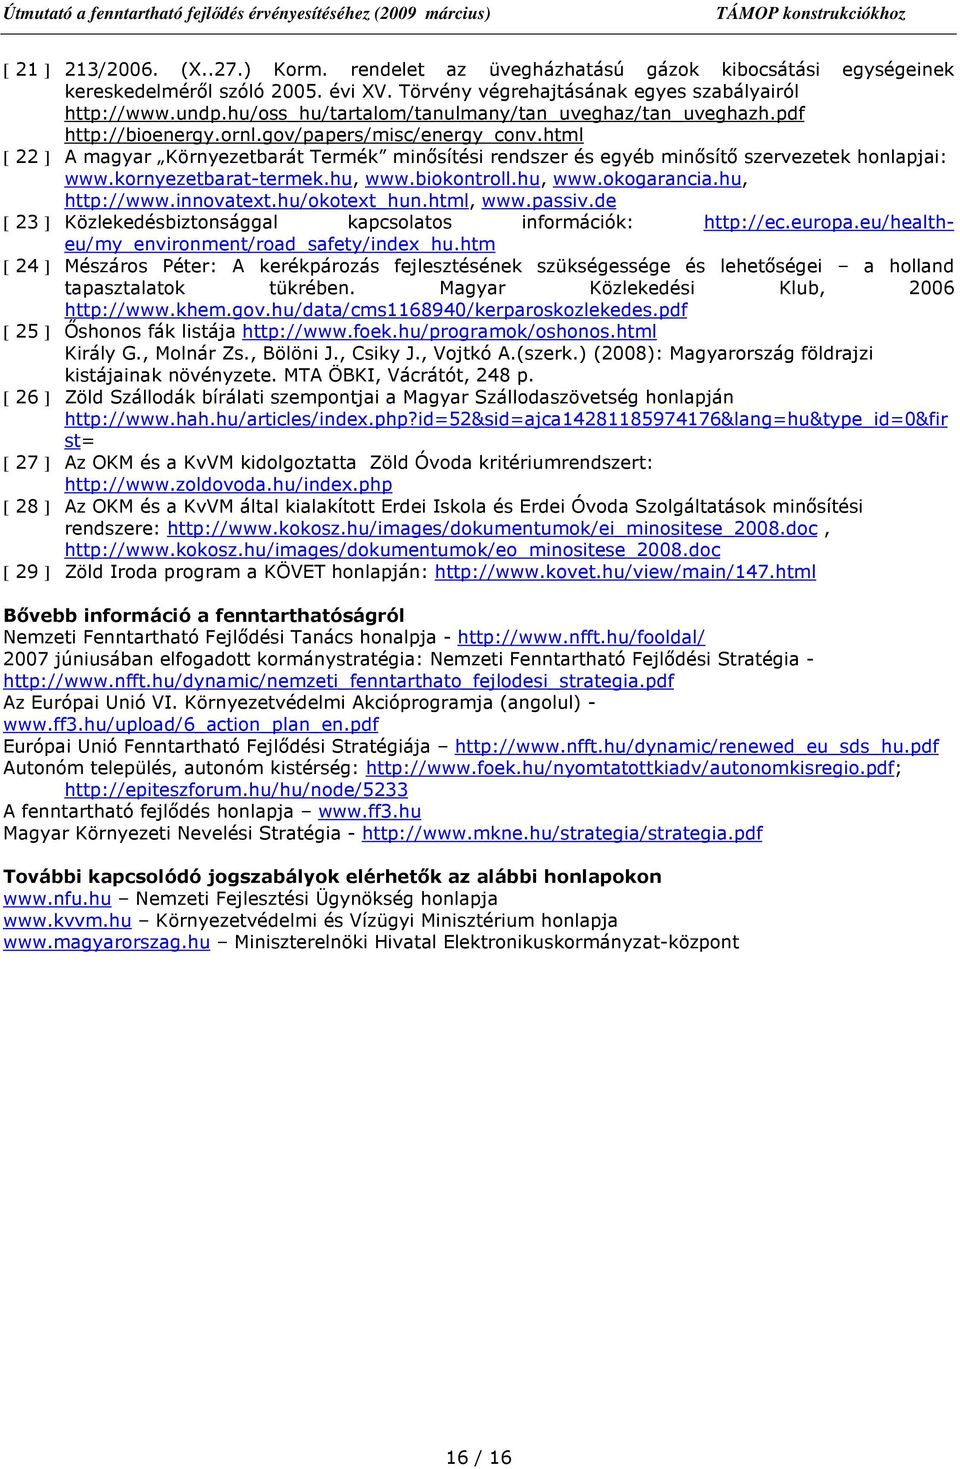 html [ 22 ] A magyar Környezetbarát Termék minısítési rendszer és egyéb minısítı szervezetek honlapjai: www.kornyezetbarat-termek.hu, www.biokontroll.hu, www.okogarancia.hu, http://www.innovatext.